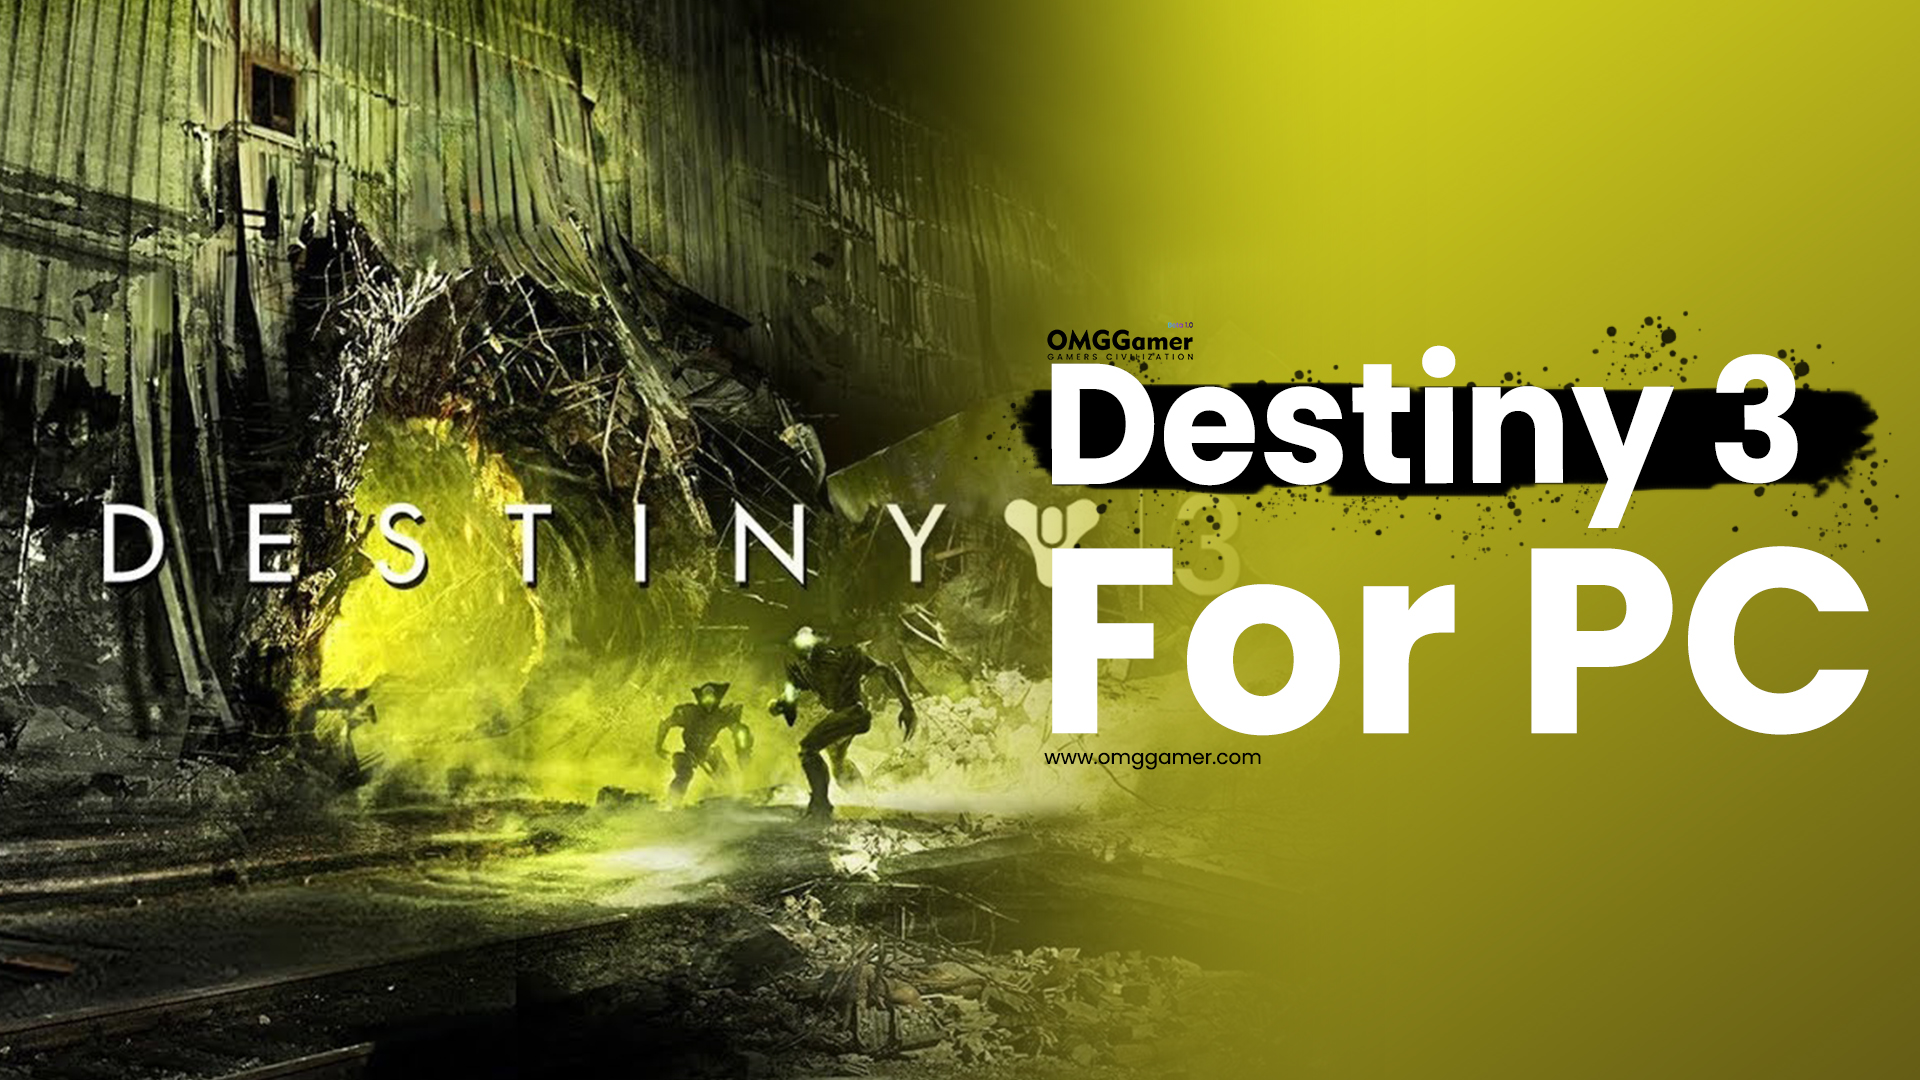 Destiny 3 for PC